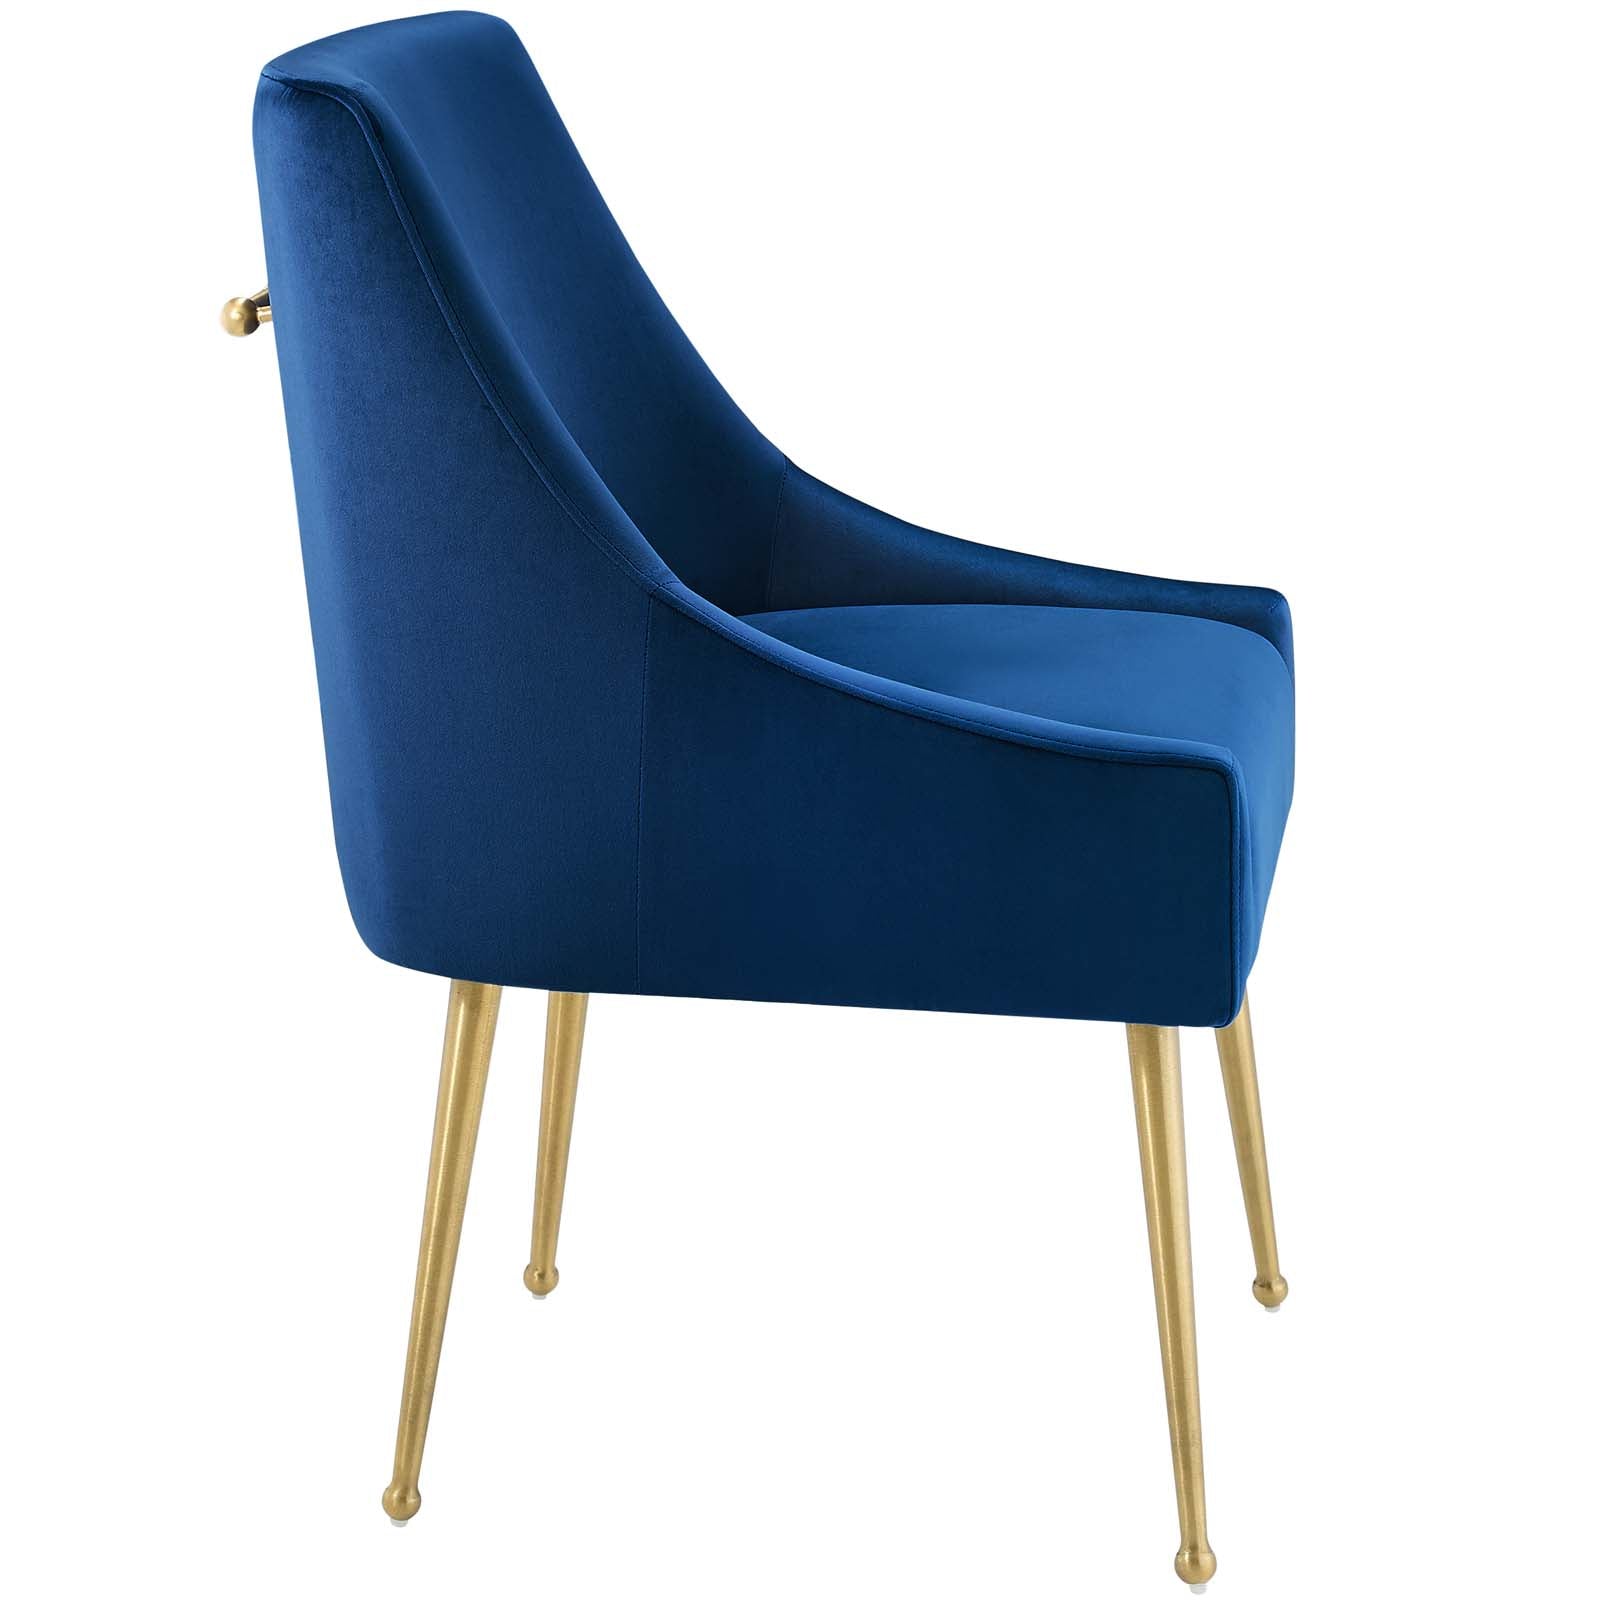 Discern Upholstered Performance Velvet Dining Chair - East Shore Modern Home Furnishings